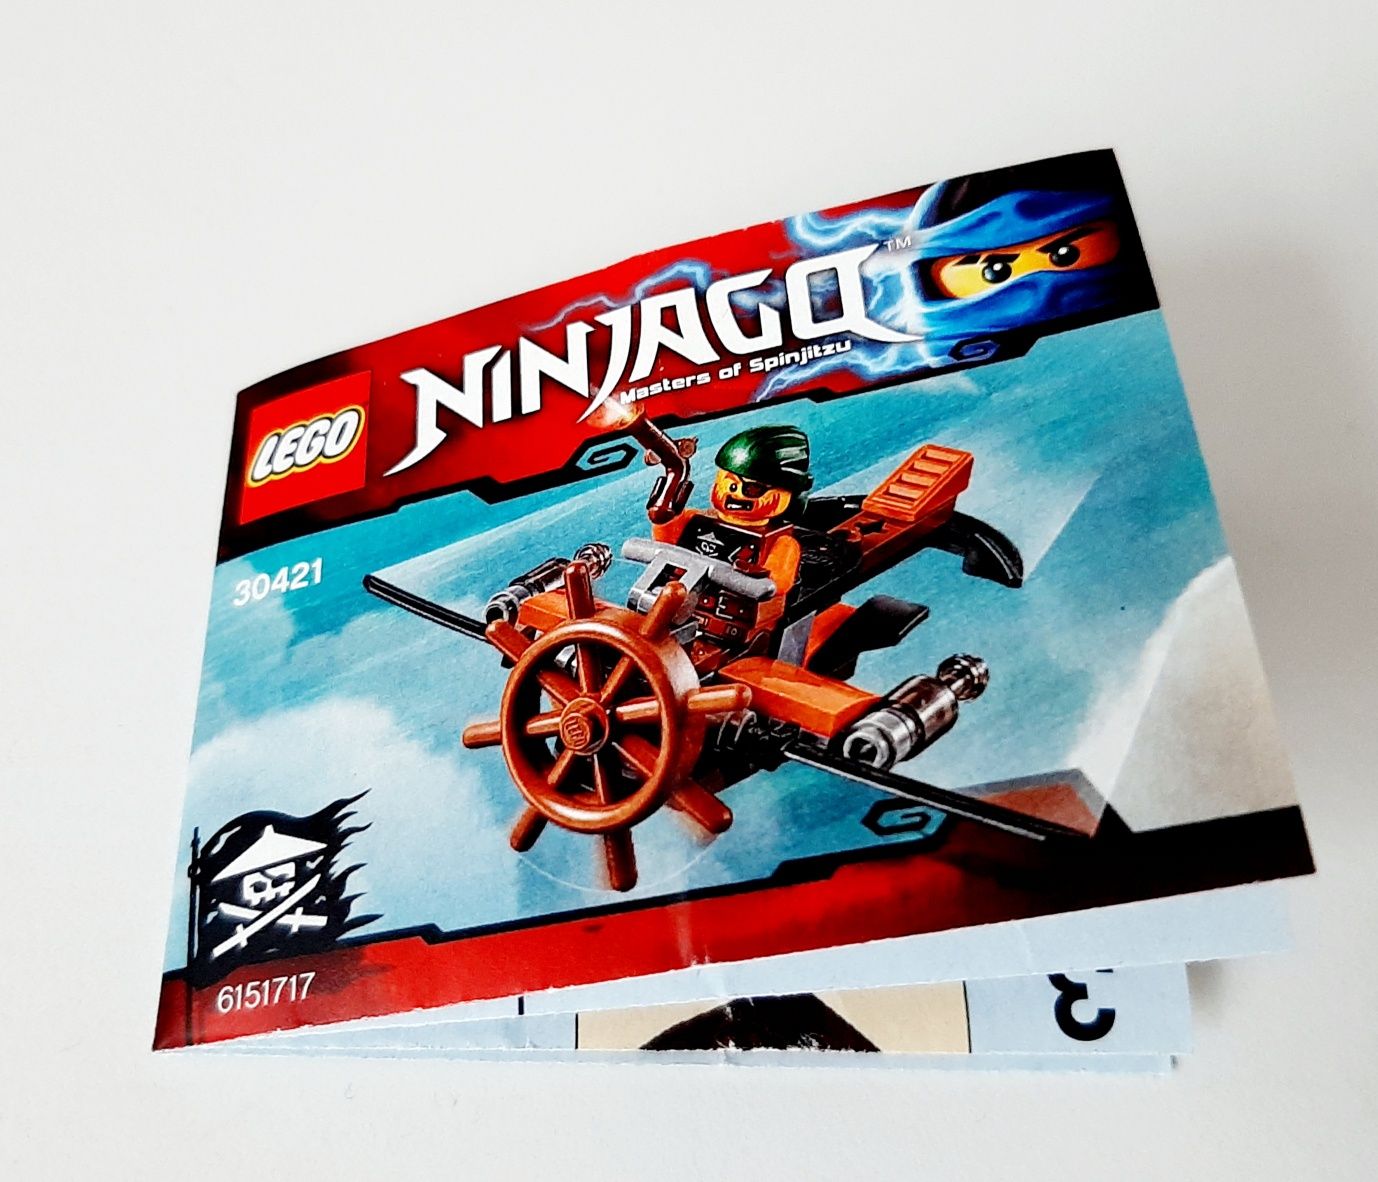 Lego Ninjago 30421